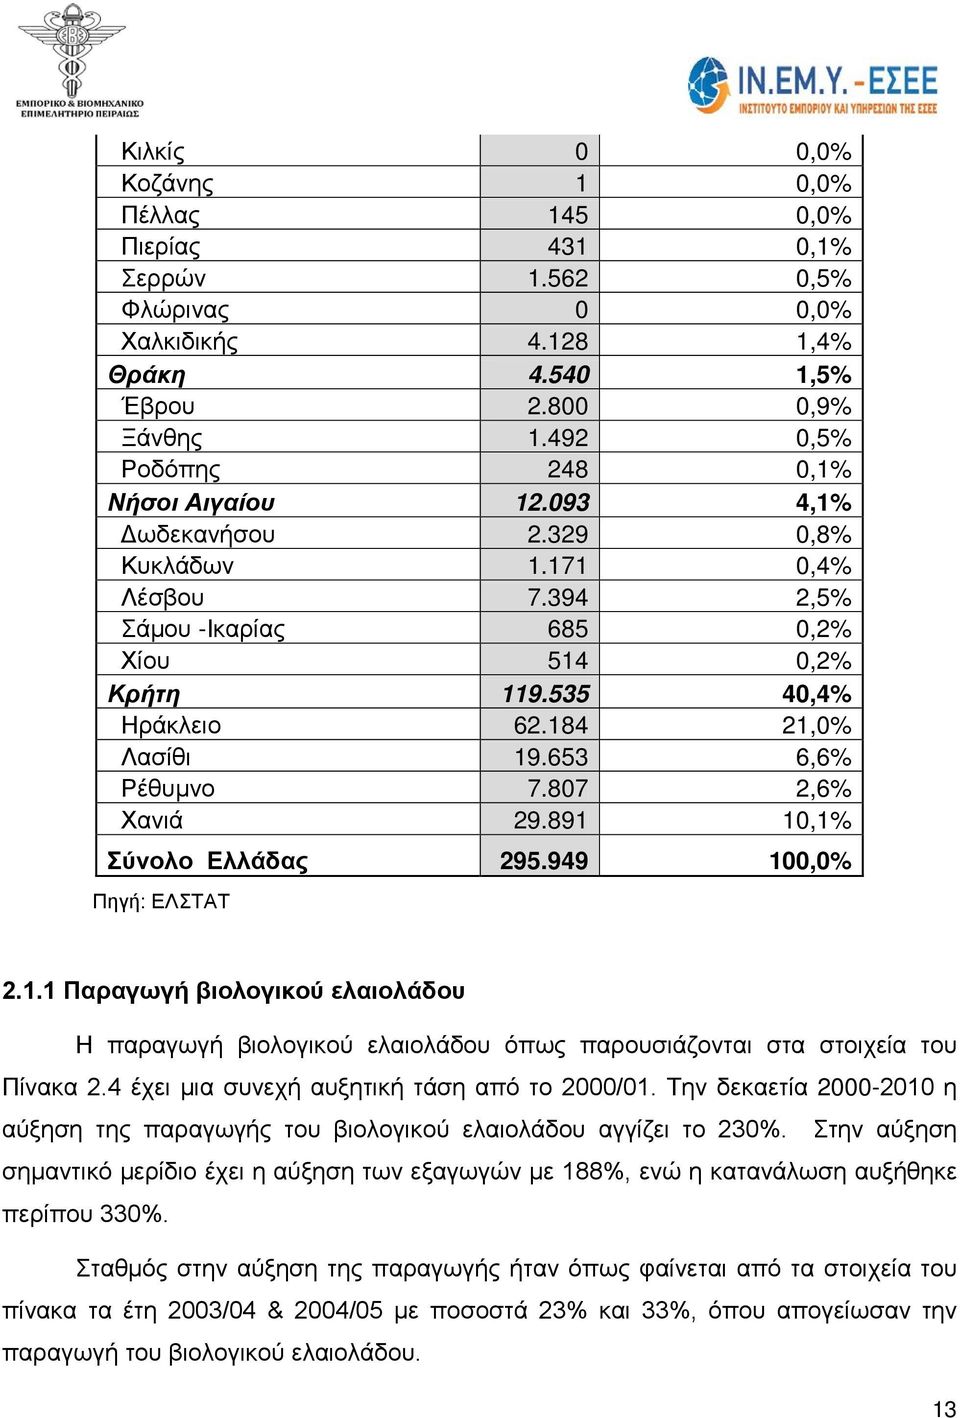 184 21,0% Λασίθι 19.653 6,6% Ρέθυμνο 7.807 2,6% Χανιά 29.891 10,1% Σύνολο Ελλάδας 295.949 100,0% Πηγή: ΕΛΣΤΑΤ 2.1.1 Παραγωγή βιολογικού ελαιολάδου Η παραγωγή βιολογικού ελαιολάδου όπως παρουσιάζονται στα στοιχεία του Πίνακα 2.